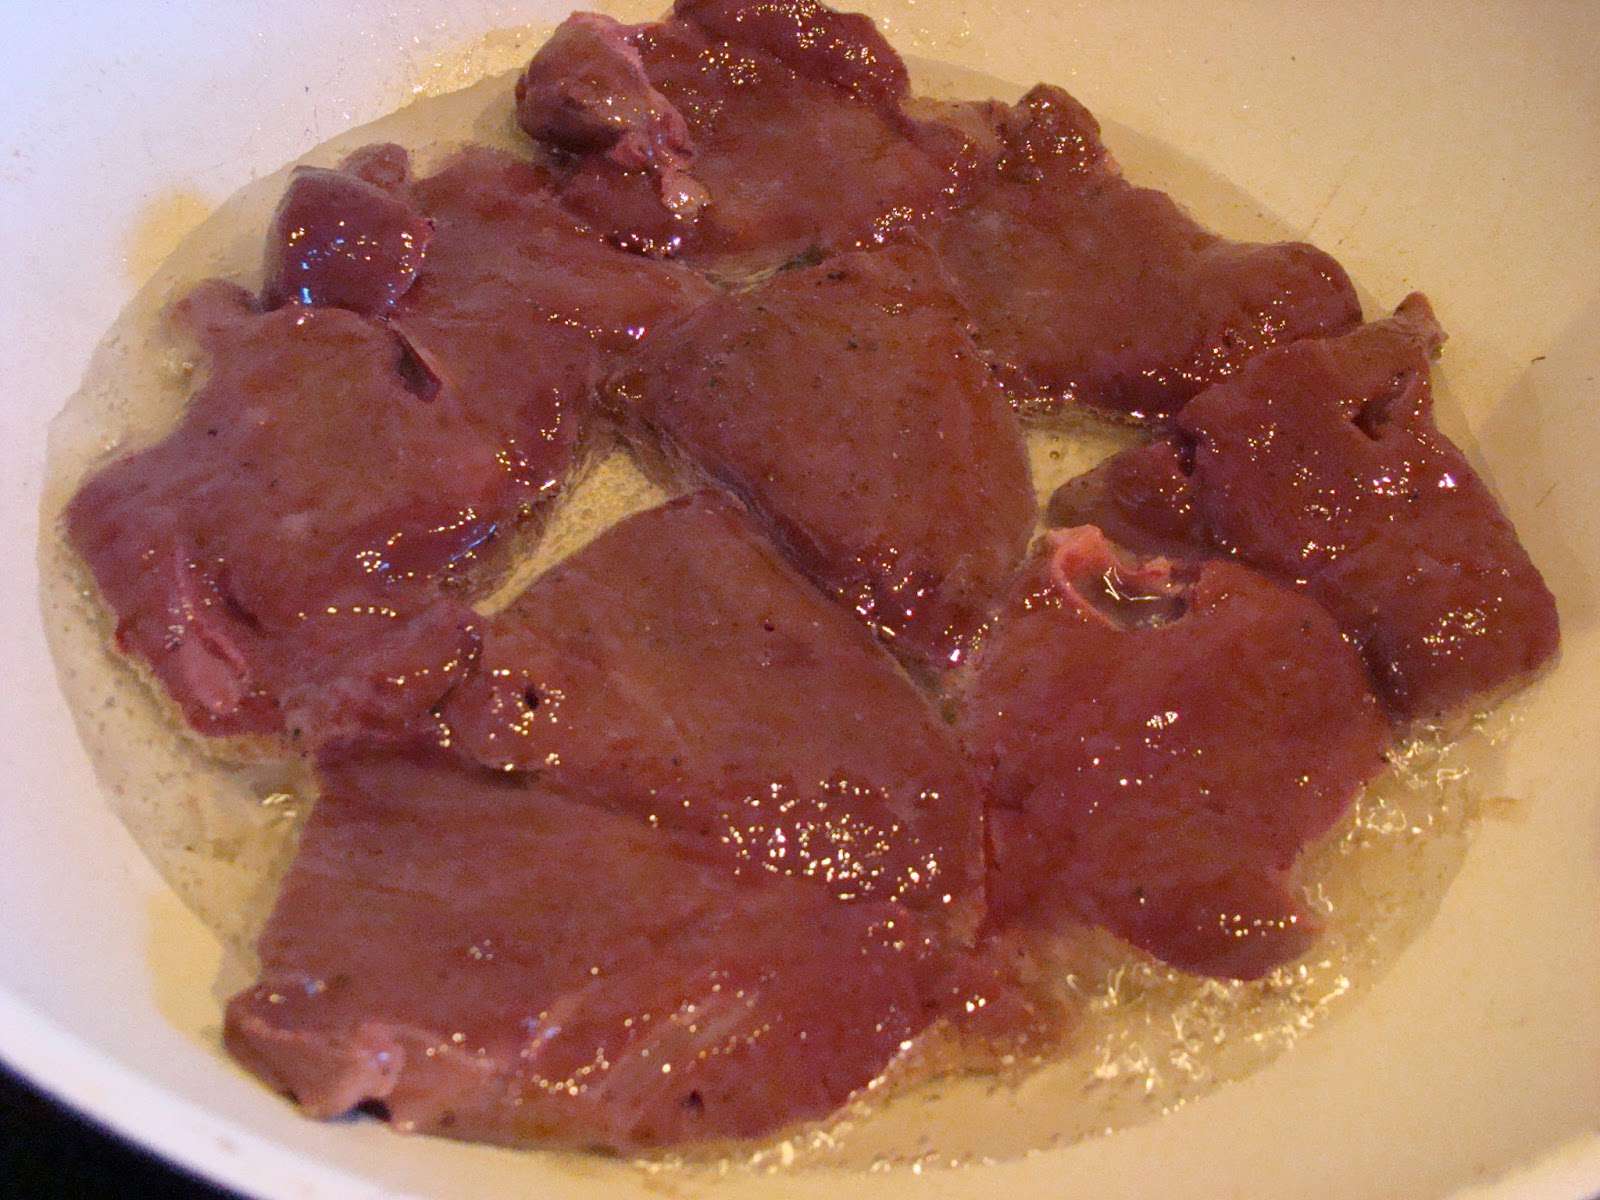 Рецепт с говяжьей печенью рецепт с фото пошагово